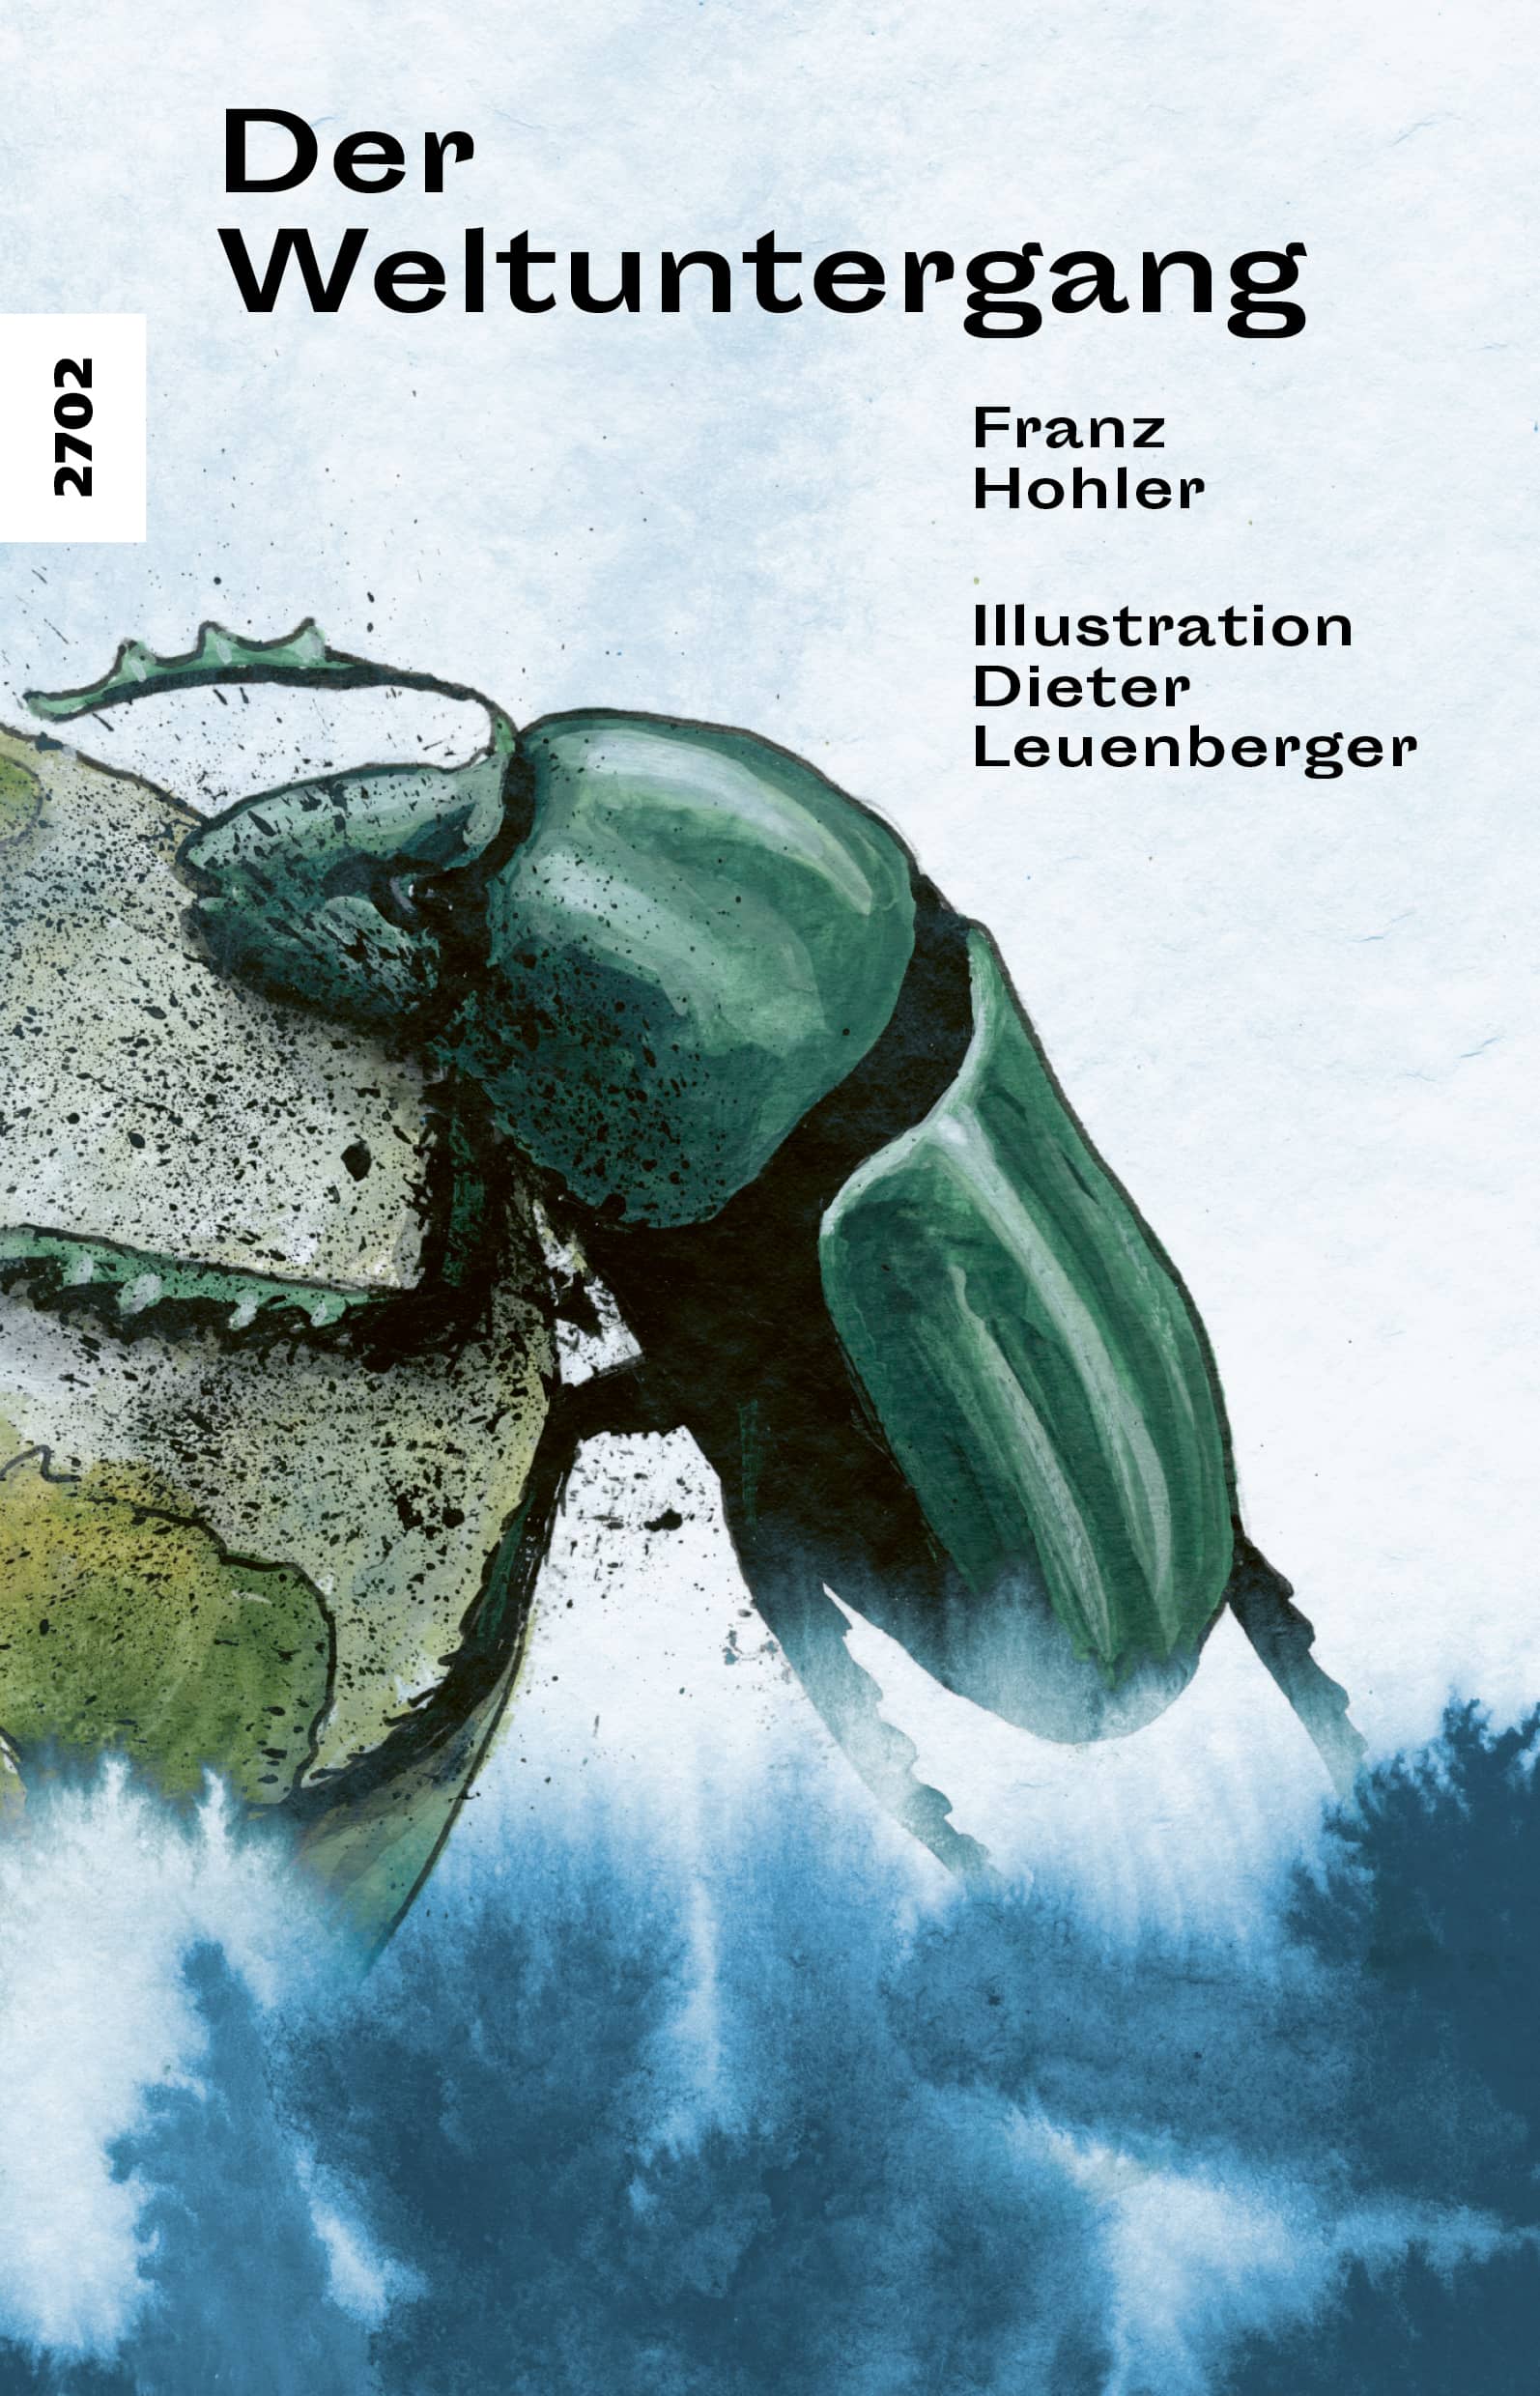 Der Weltuntergang, eine Ballade von Franz Hohler, Illustration von Dieter Leuenberger, SJW Verlag, Artenvielfalt, Klassiker